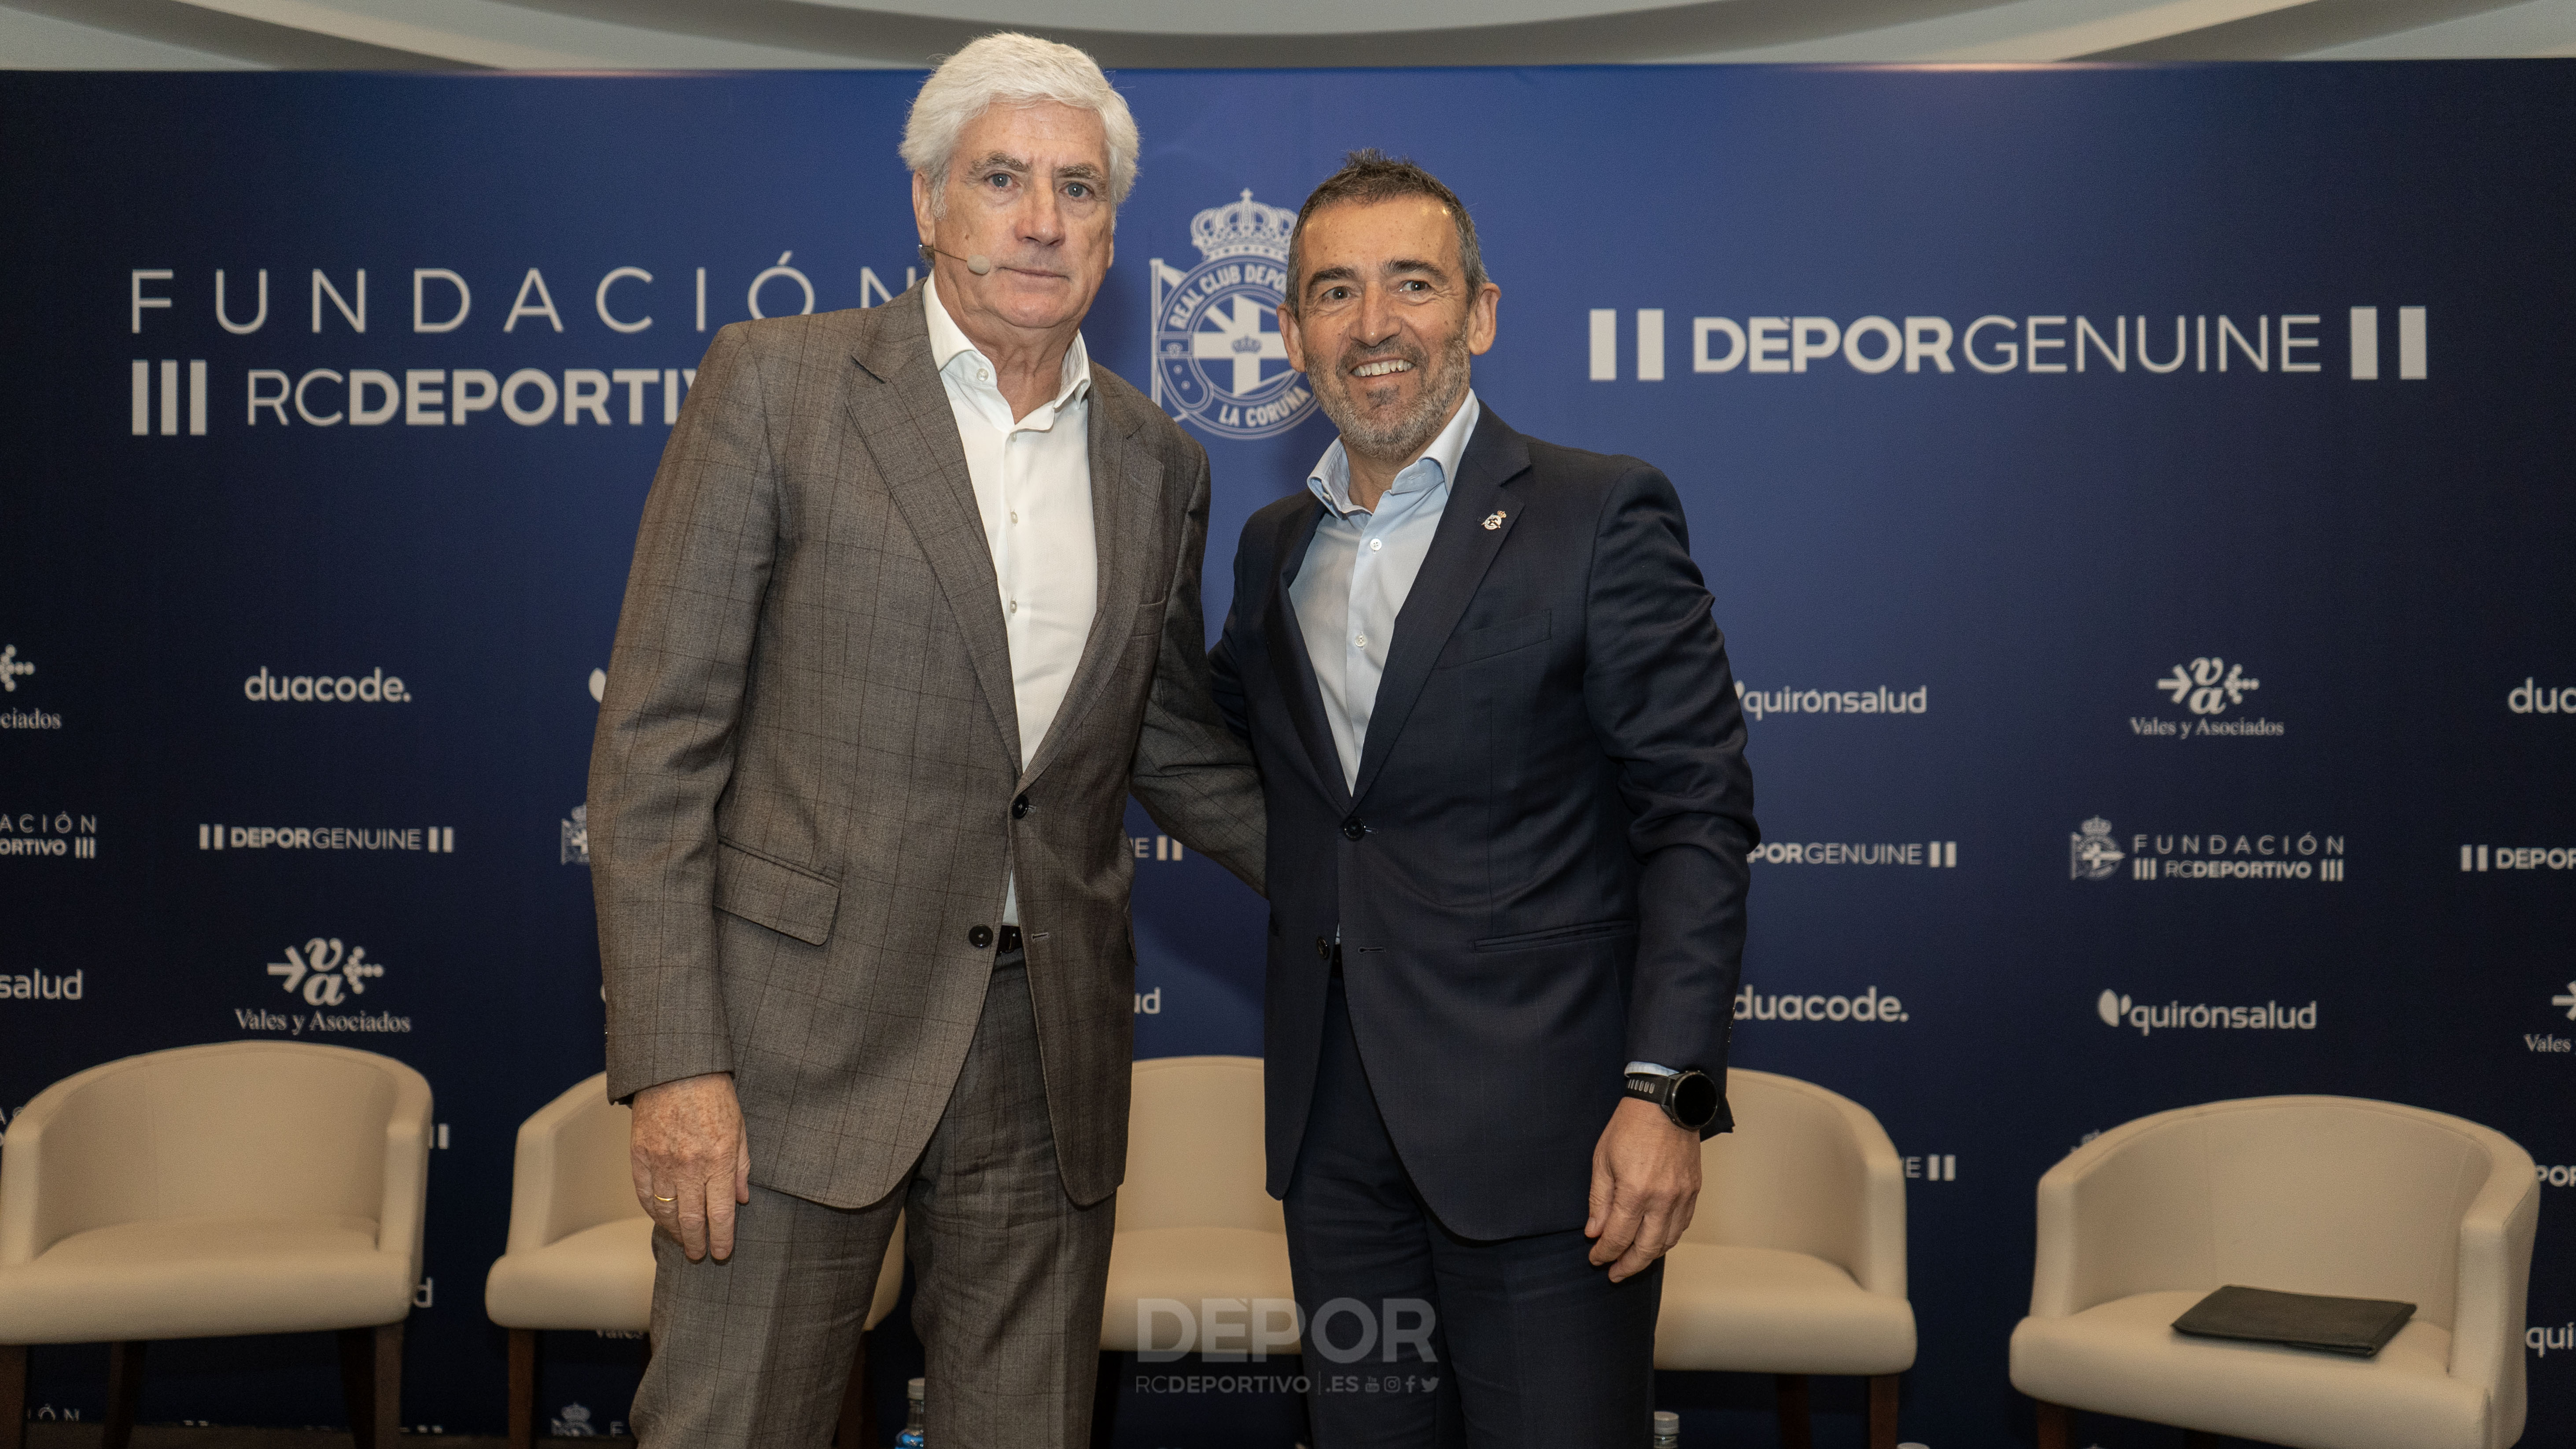 La Fundación RC Deportivo presentó su trabajo 'El Dépor Genuine y su impacto en la sociedad'